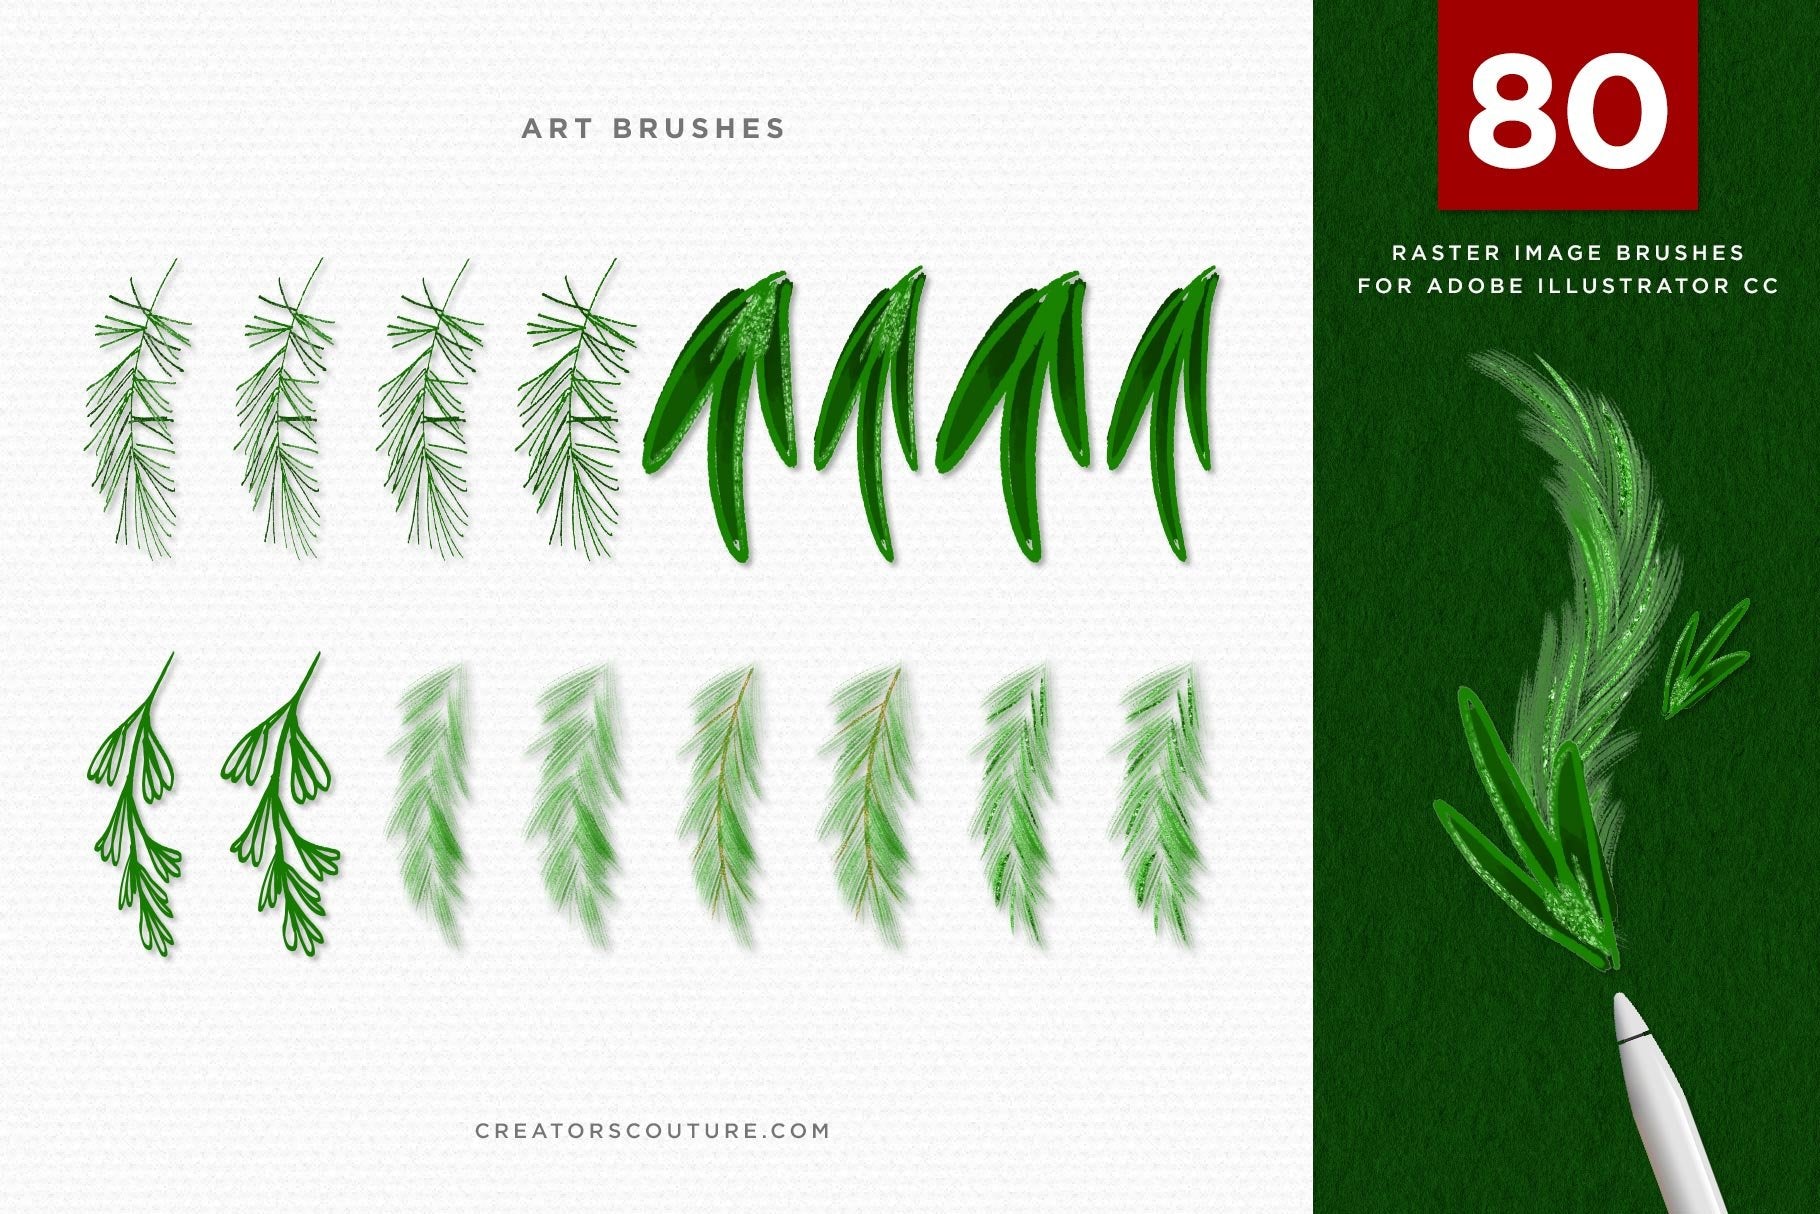 Christmas & Winter Greenery Illustrated Brushes for Adobe Illustrator art brushes 2